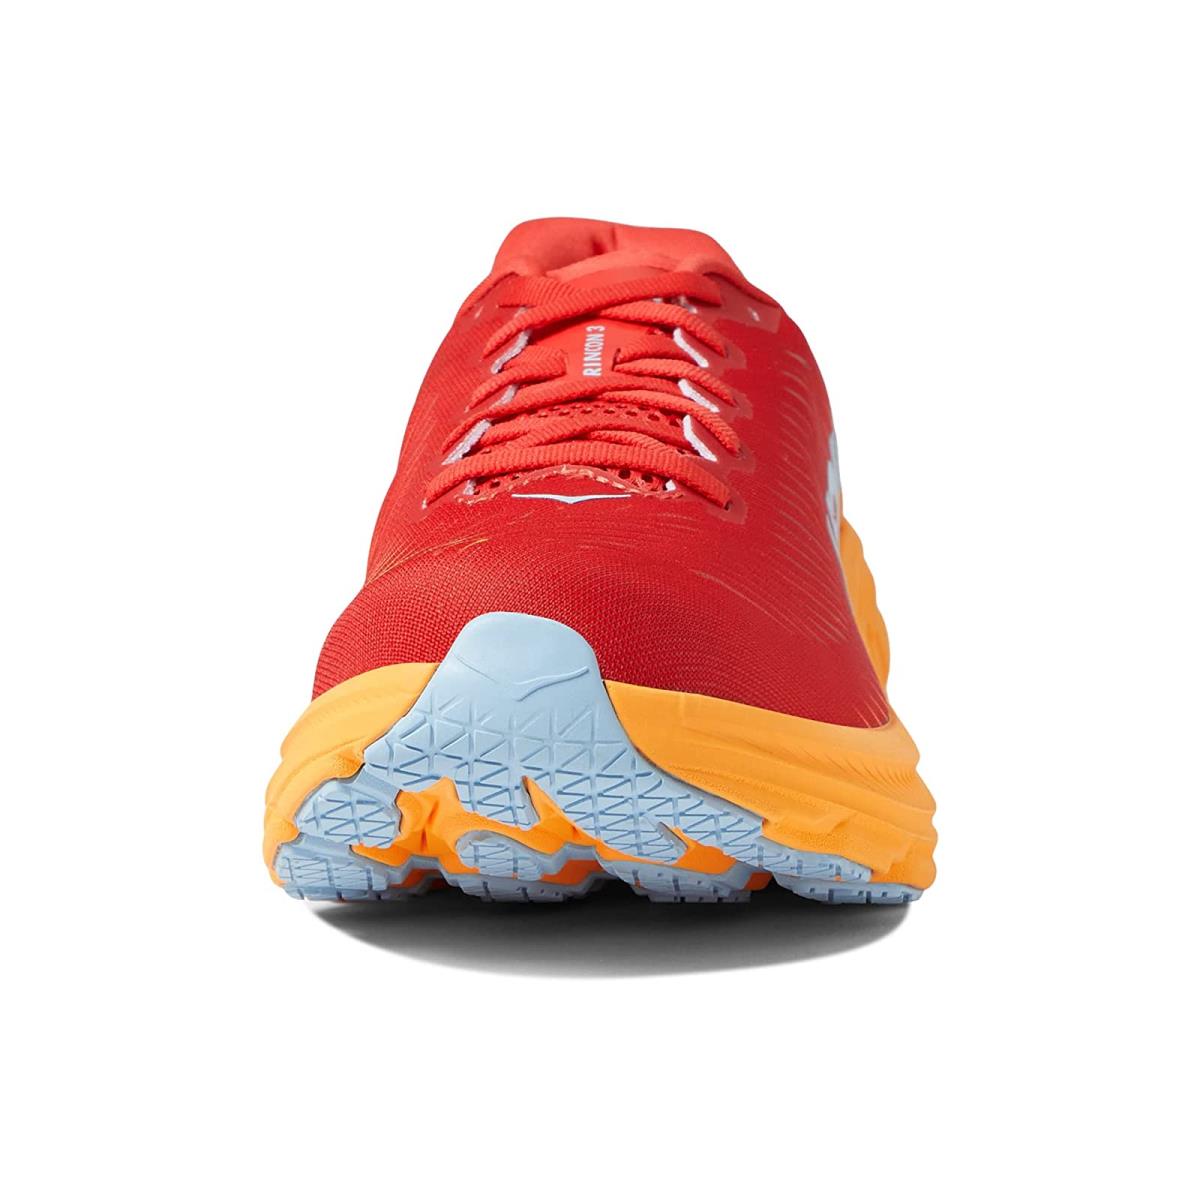 Hoka Rincon 3 Men's Everyday Running Shoe - Fiesta / Amber Yellow - Size 8.5